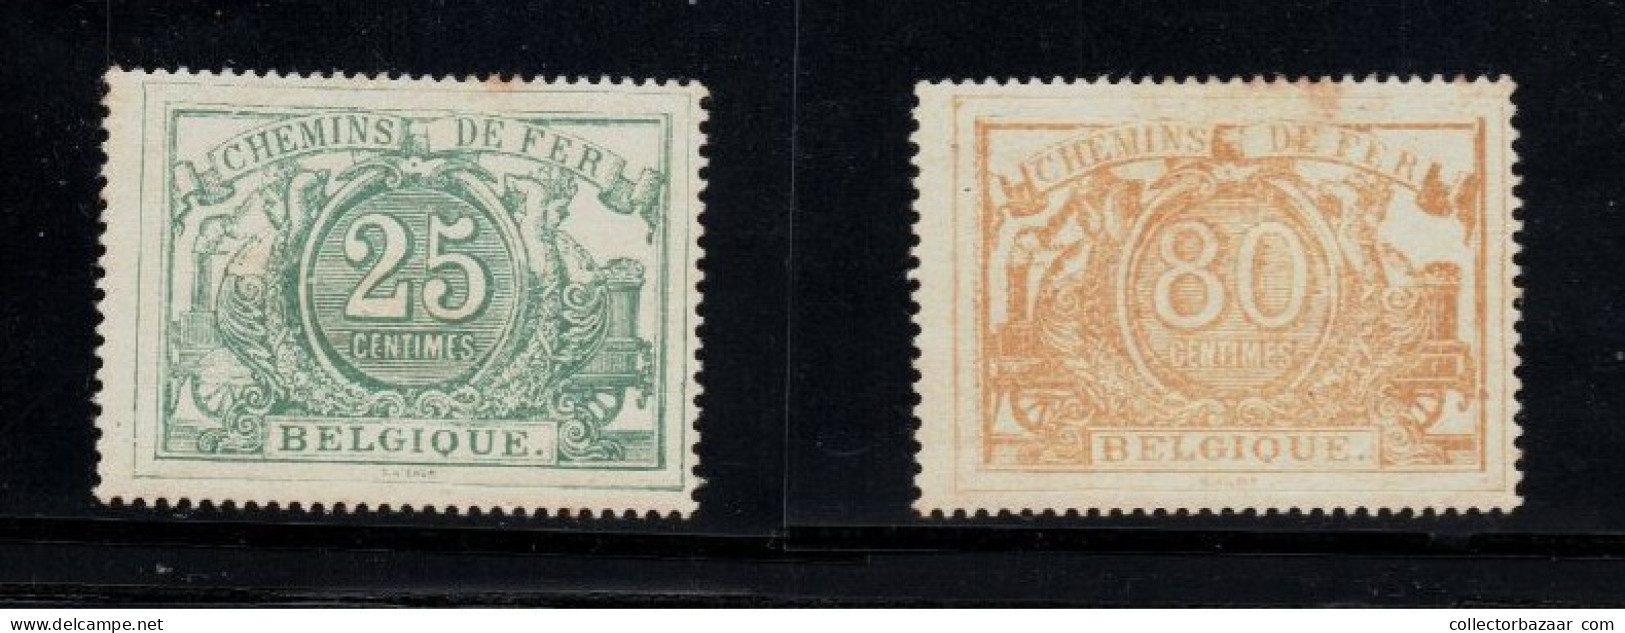 Belgium Belgique Mint Reprints Or Fakes ? Please Decide You Railway Railroad Stamps Chemins De Fer - Neufs